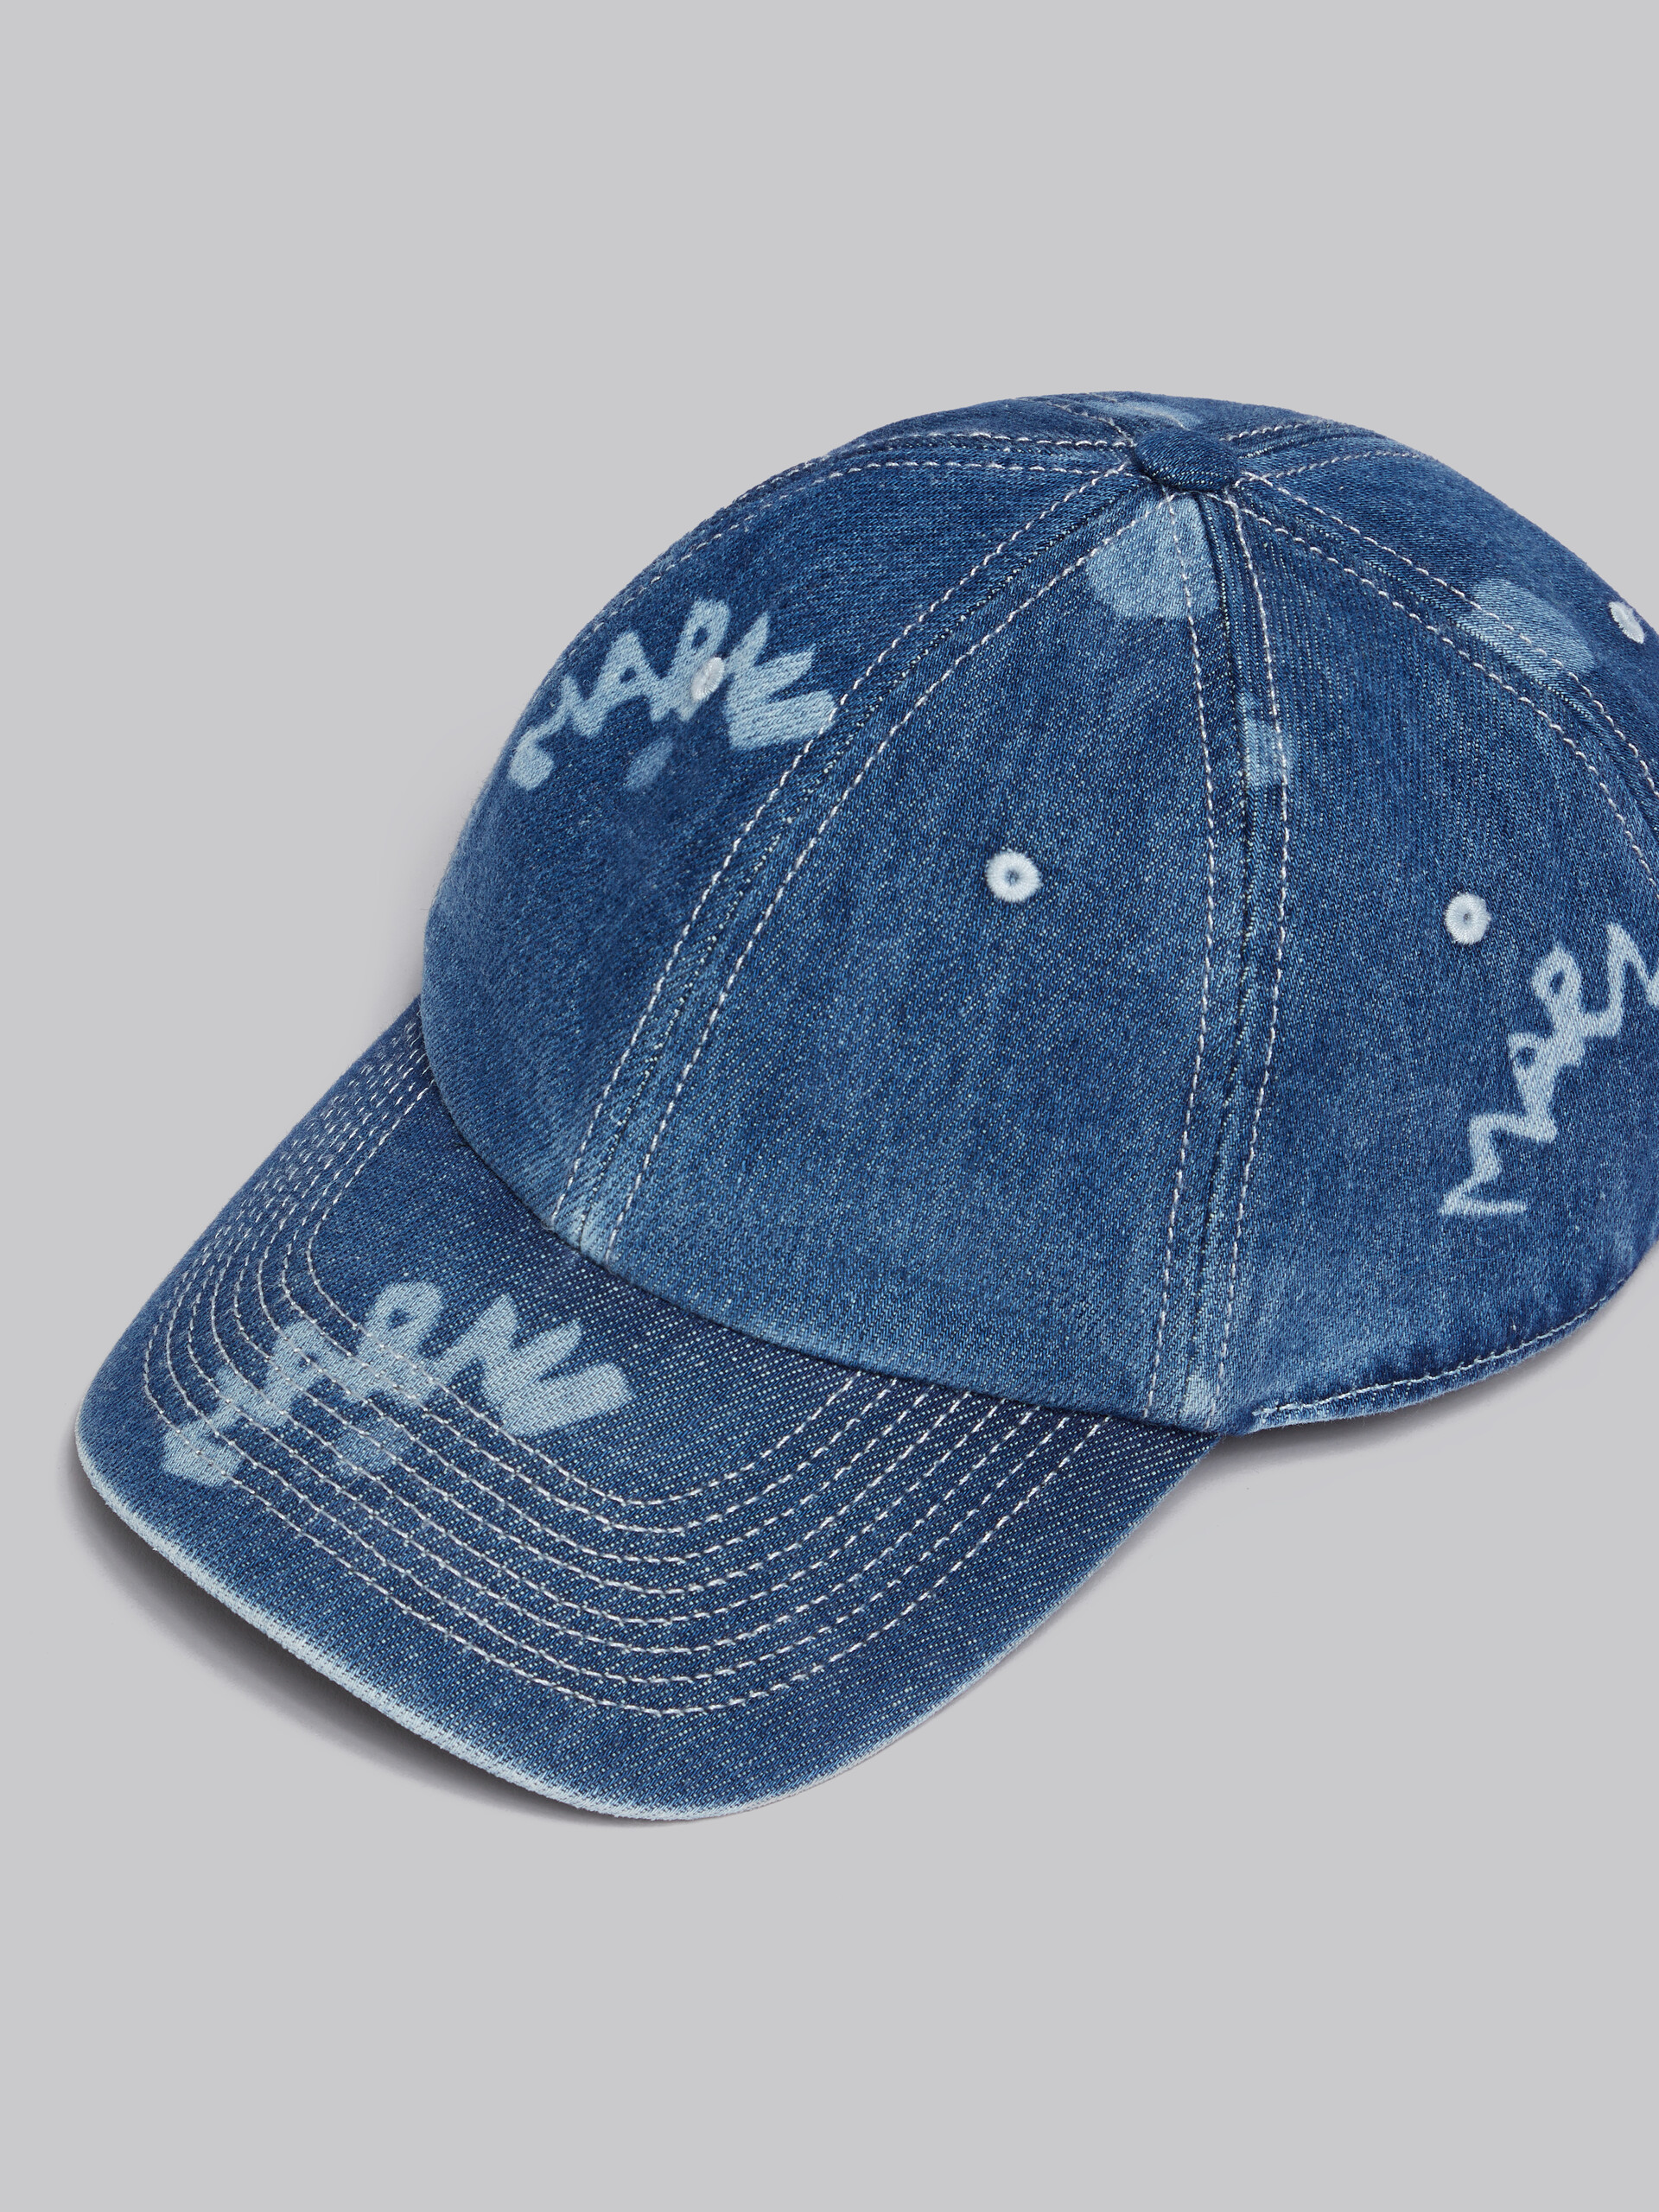 Blaue Schirmmütze aus Denim mit Marni Dripping-Print - Hüte - Image 4